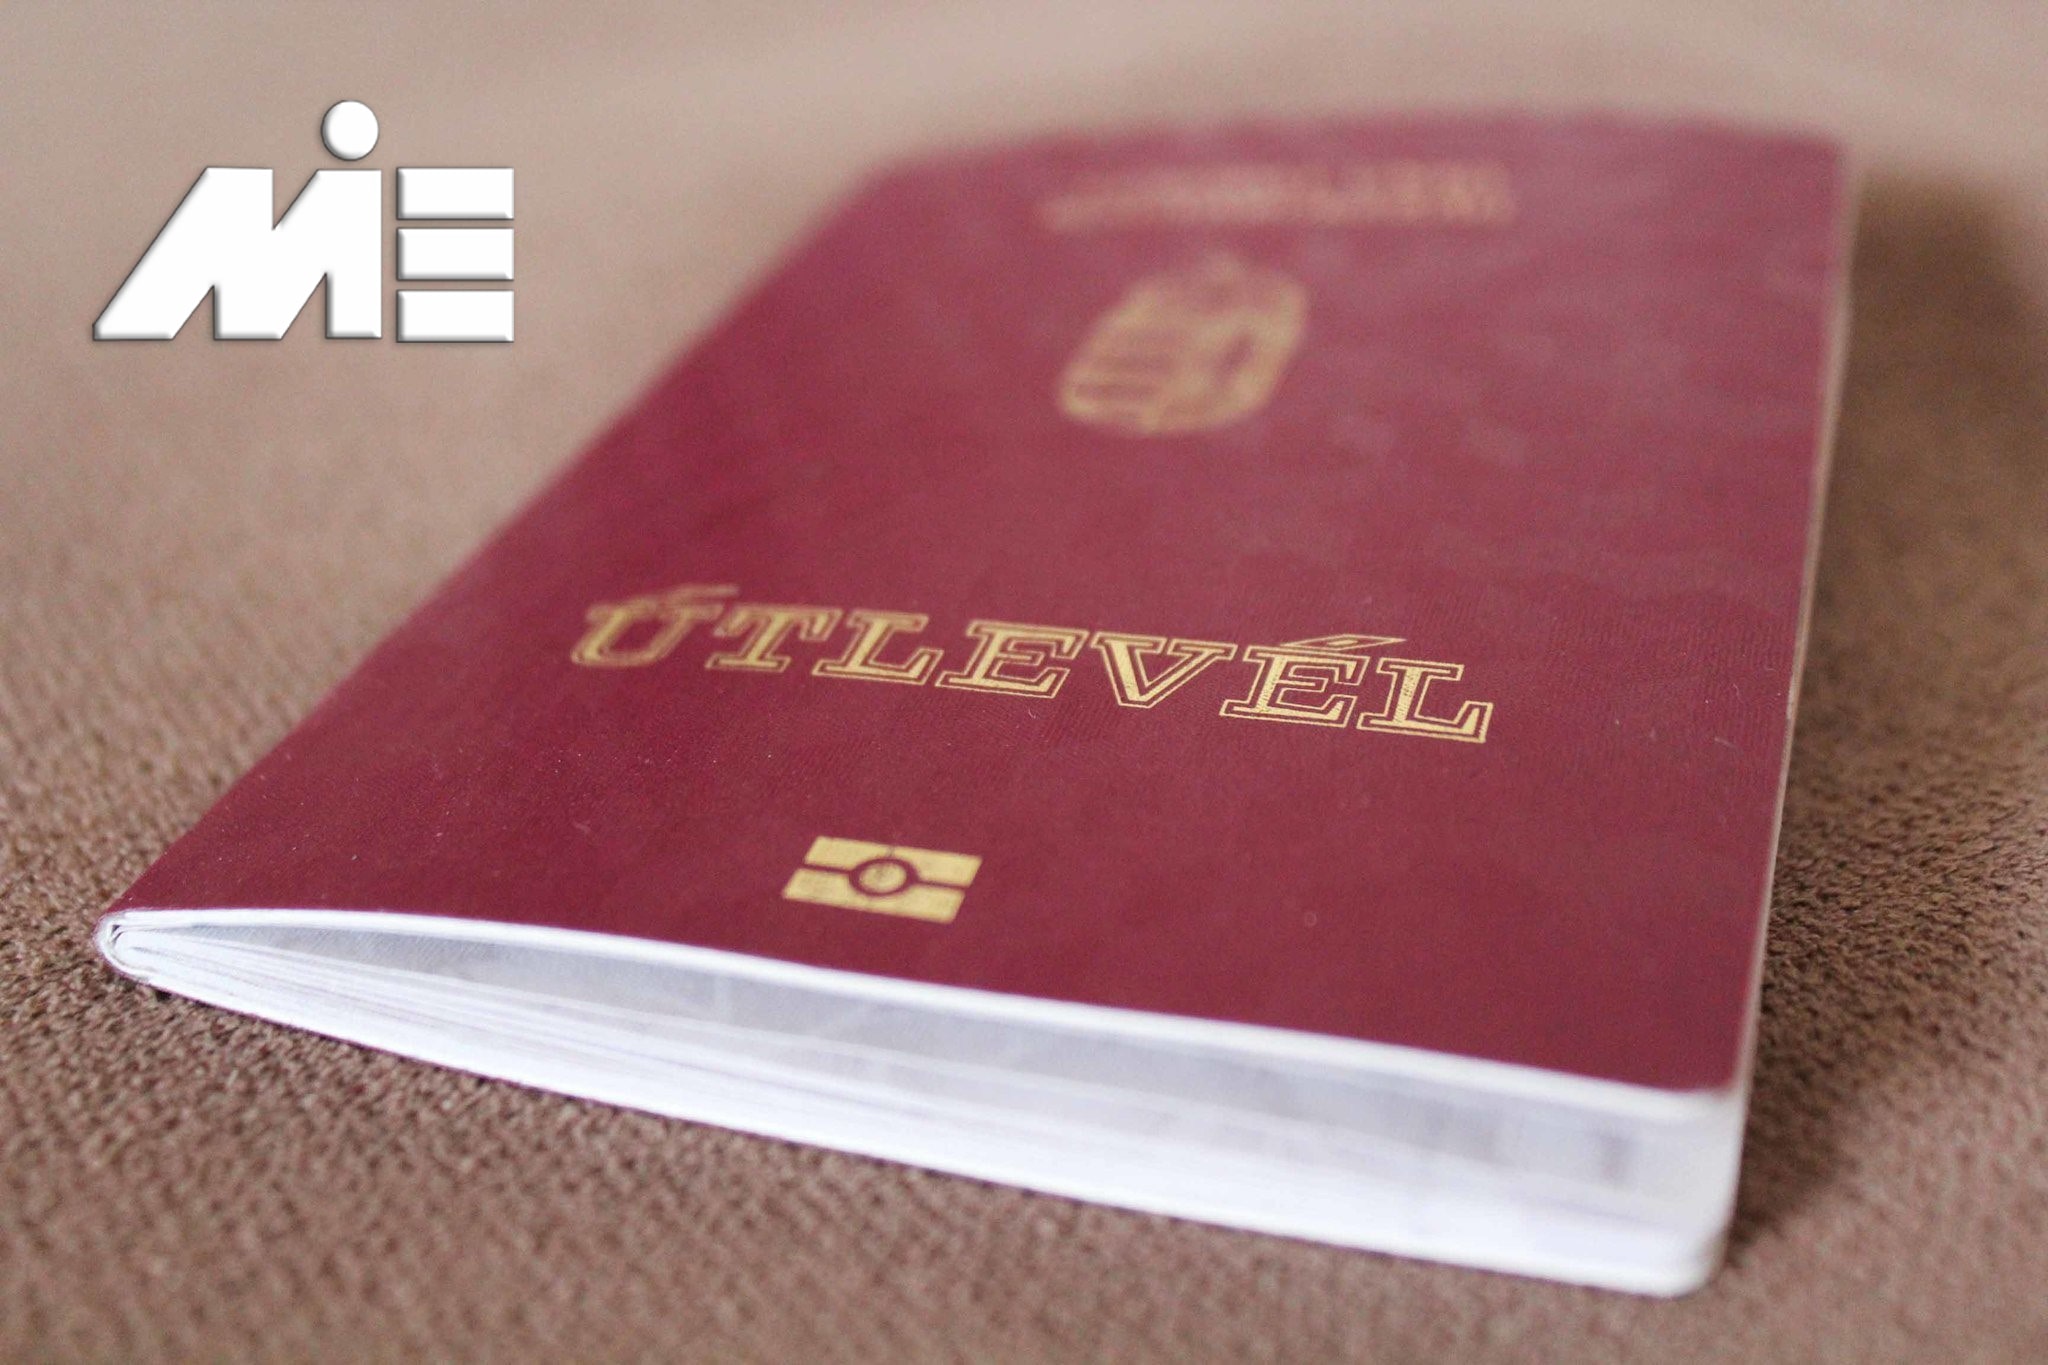 پاسپورت مجارستان - تابعیت مجارستان - شهروندی مجارستان - کار در مجارستان و اخذ تابعیت